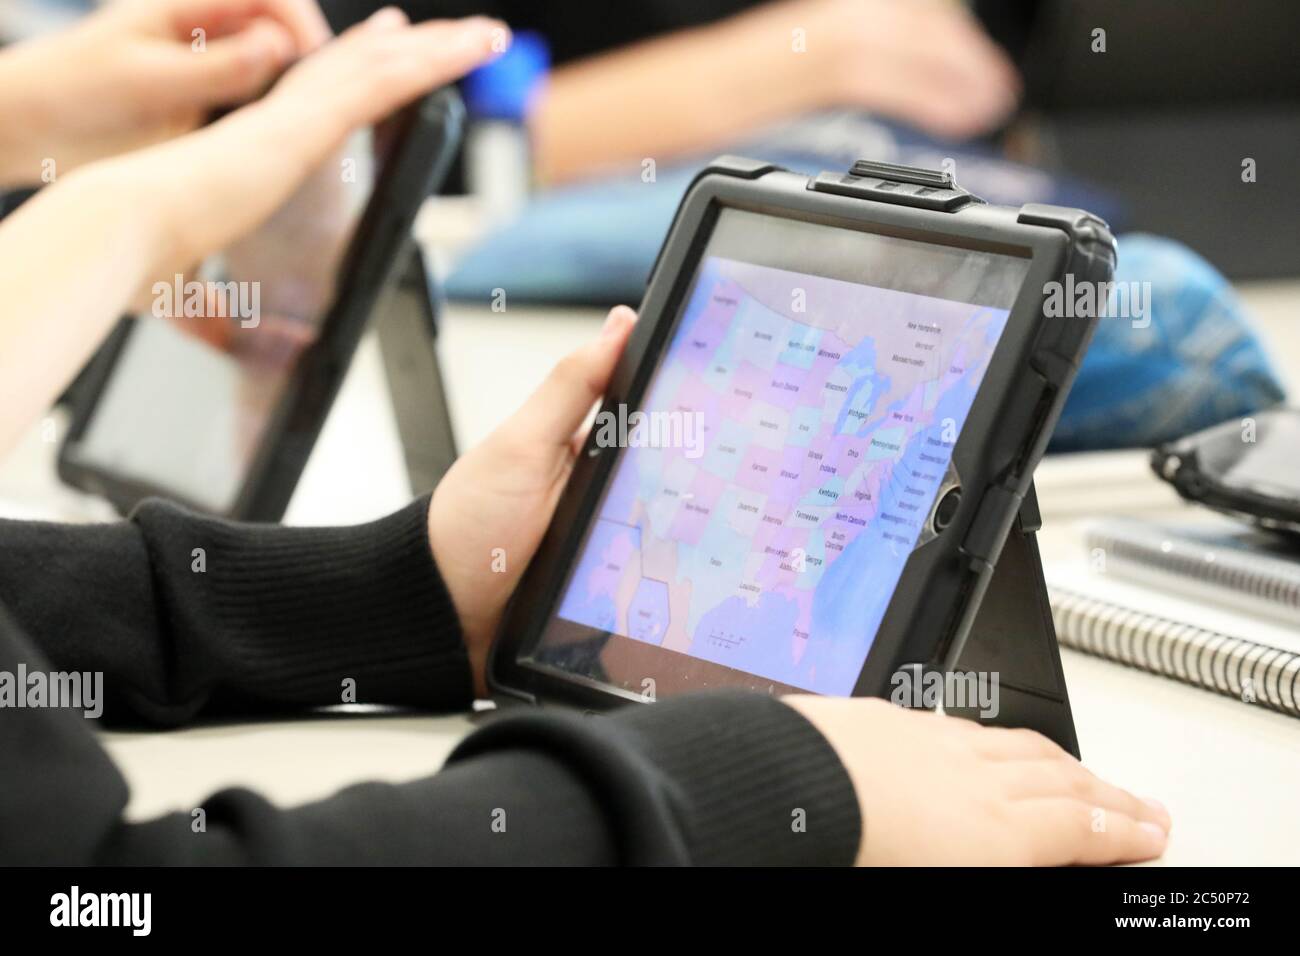 Der moderne Schüler im Klassenzimmer mit einem digitalen Gerät oder Tablet zu arbeiten oder zu forschen mit. Geografisches, politisches Thema mit farbigen ma Stockfoto